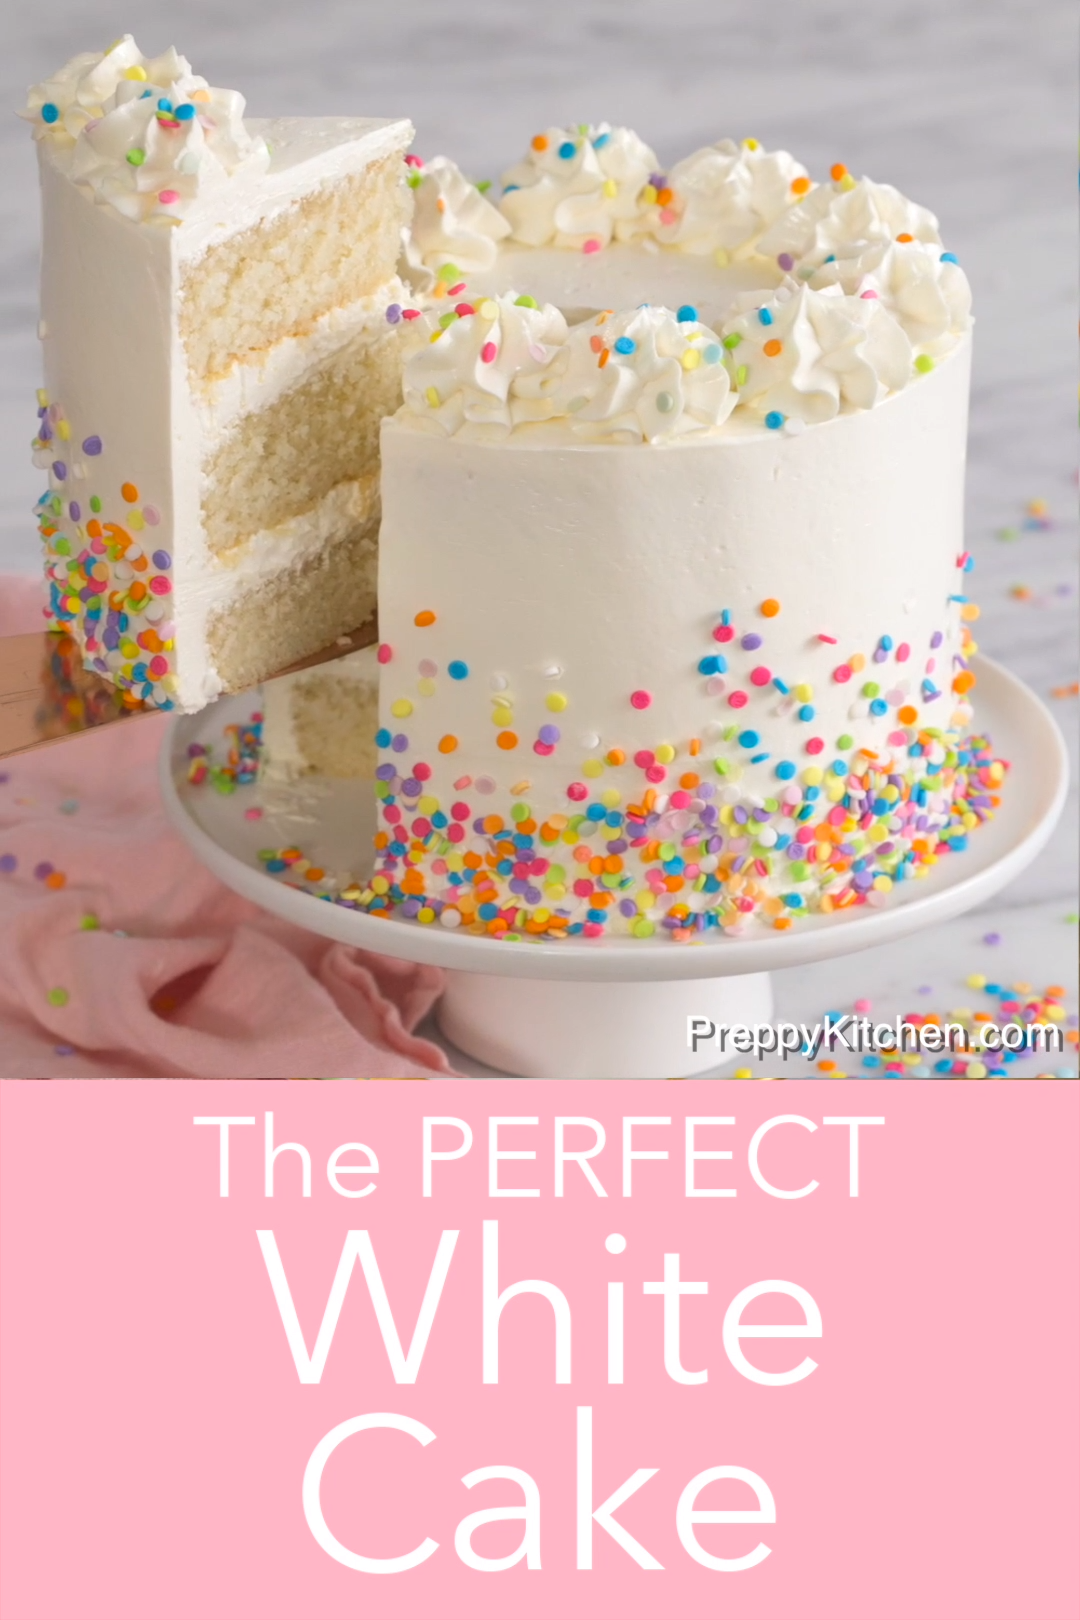 White Cake Recipe - Preppy Kitchen -   18 white cake Recipes ideas